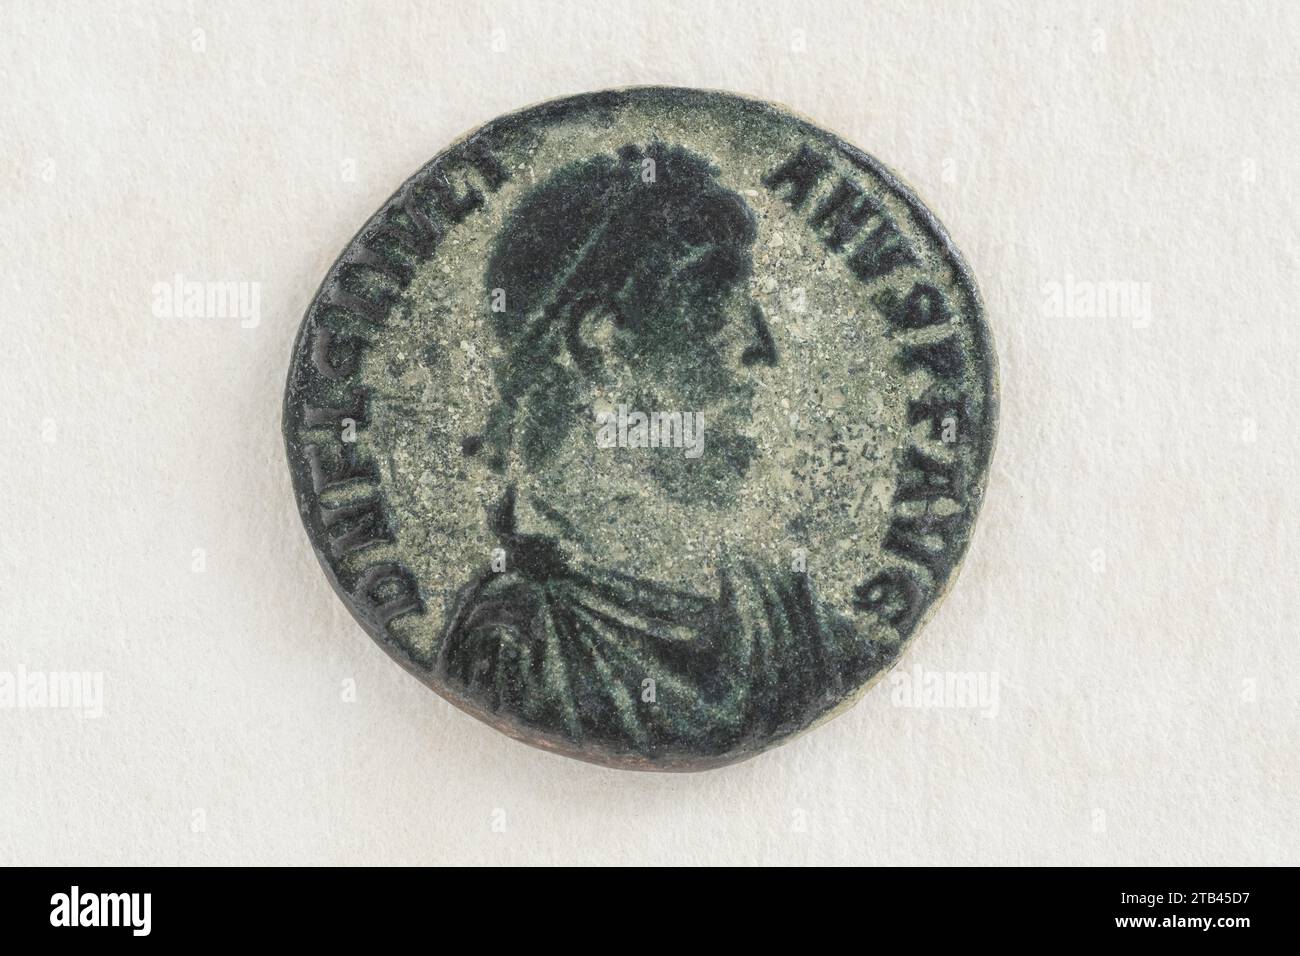 replica of an ANTIQUE Roman Empire AD Bronze Coin. Oxidized Green Reproduction bronze coin from the Roman era. macro.  Roman relic. Stock Photo